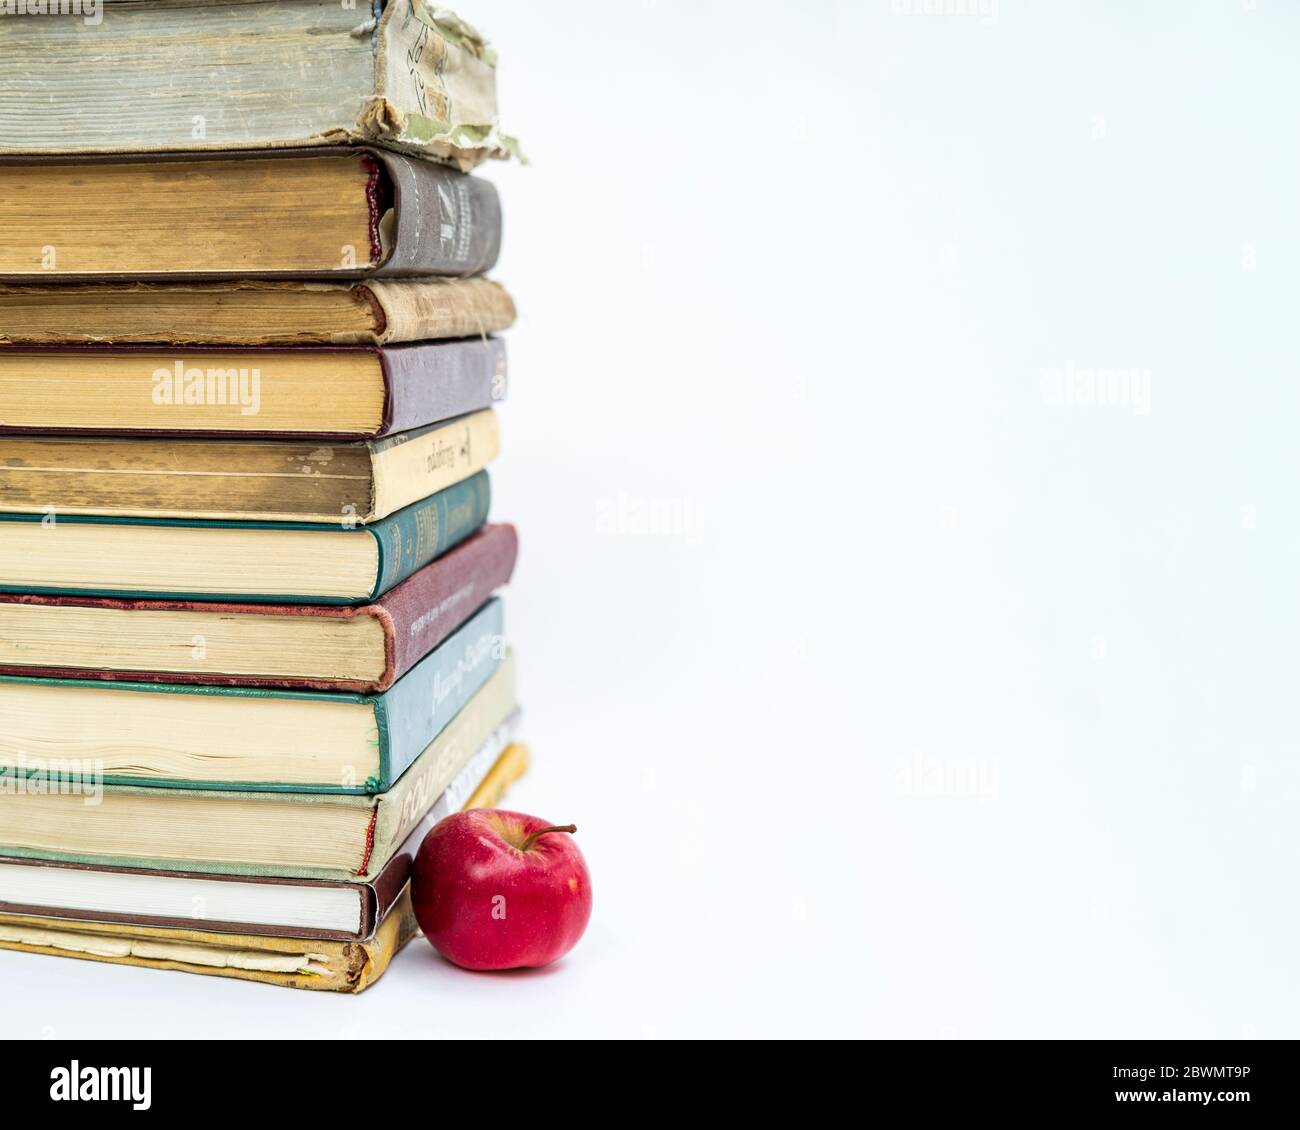 une pile de vieux livres. Une pomme rouge se trouve à proximité. Le concept d'une idée est venu comme une pomme de Newton. Sur fond blanc. Banque D'Images